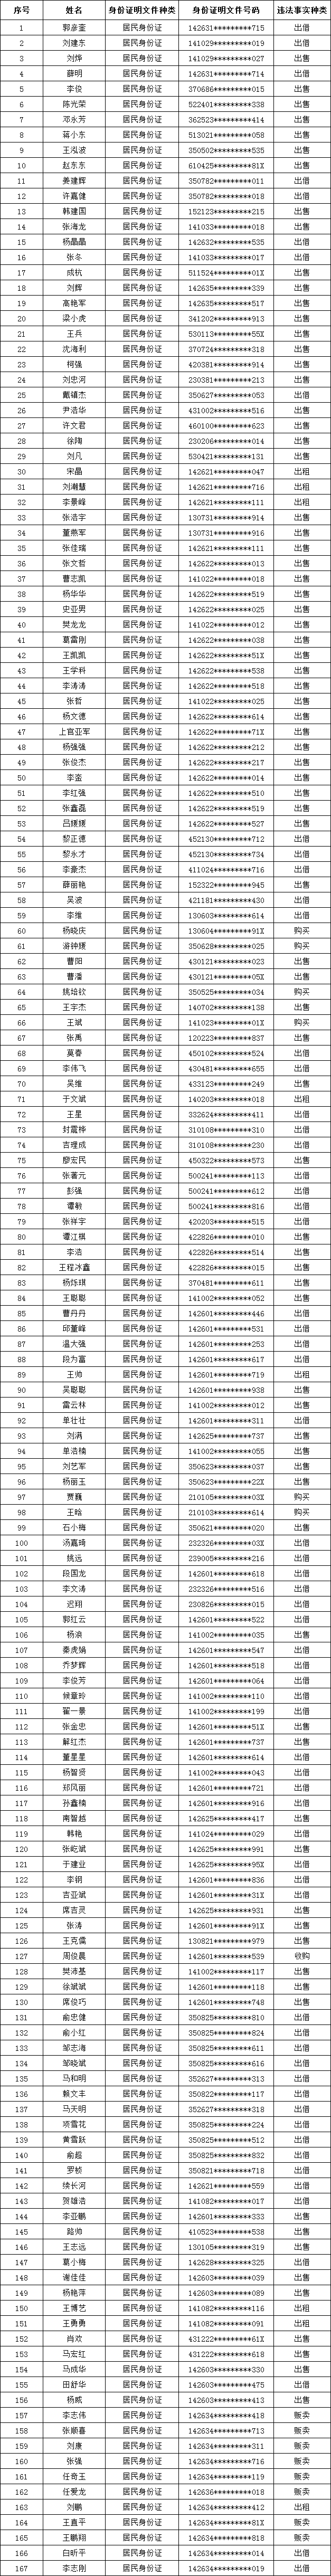 临汾公安公开曝光181人,姓名,身份证号被公布,看看都